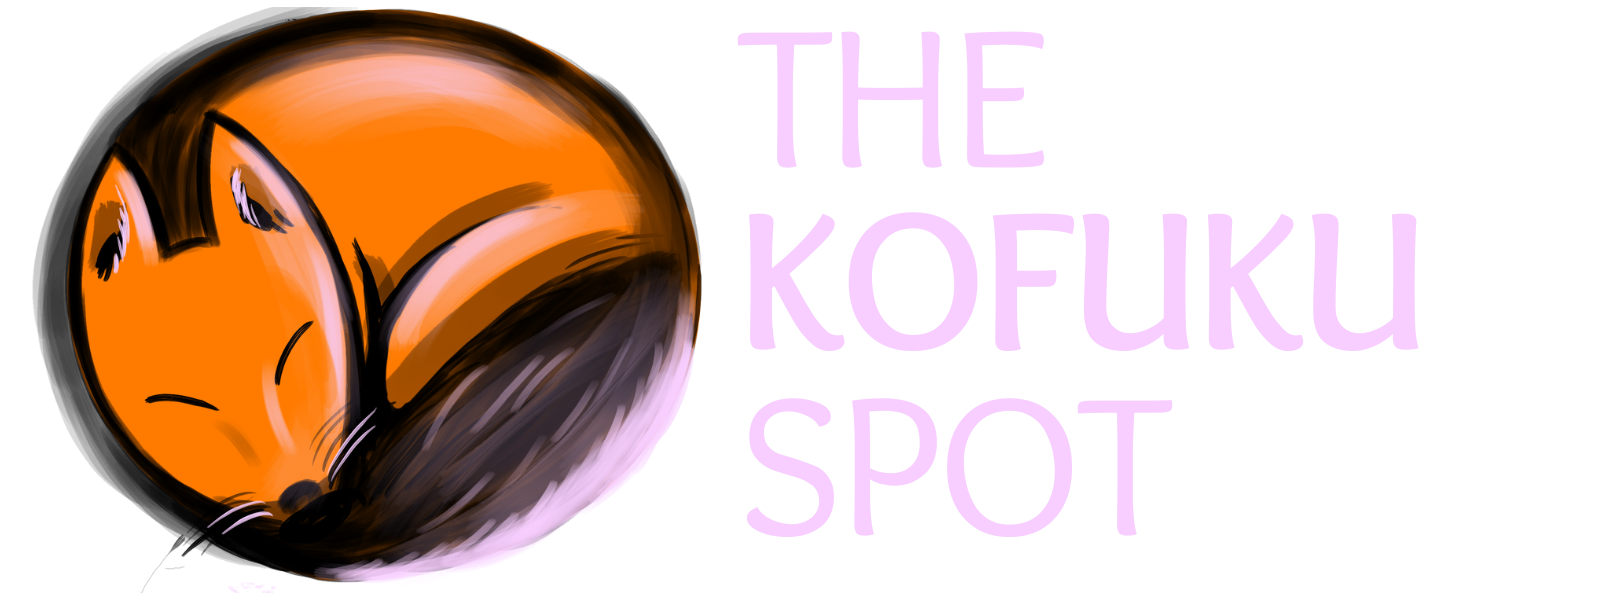 THE KOFUKU SPOT